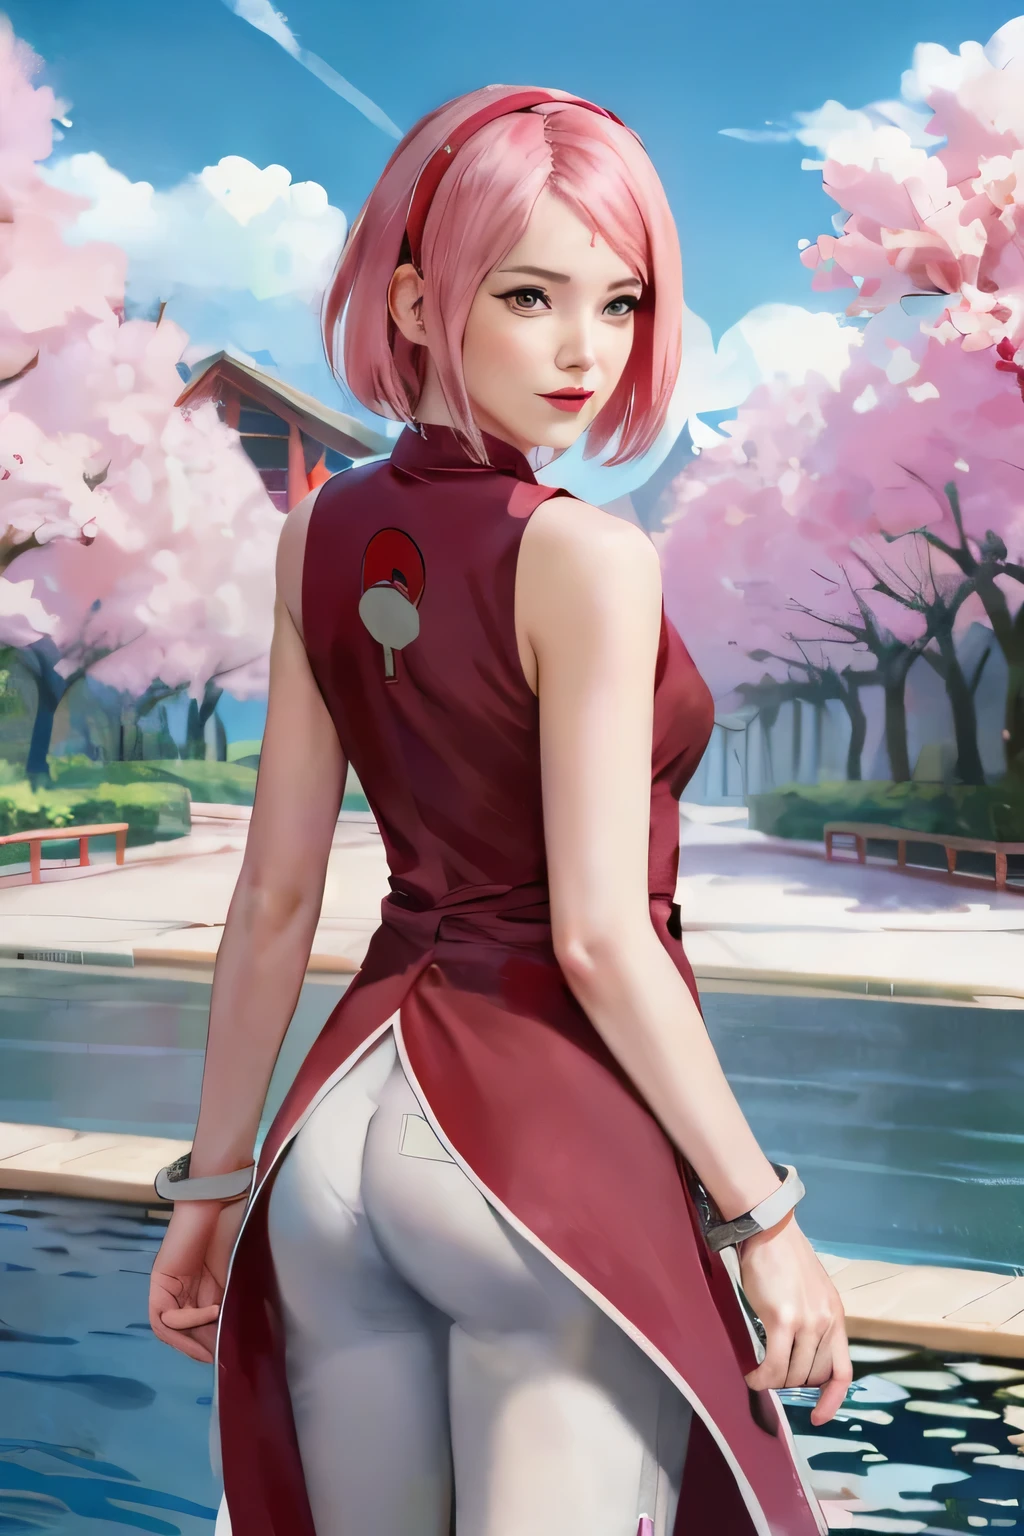 
Sakura uchiha. 女性が立って振り返っていた. 公園で. 彼女はハートの赤いチャイナドレスを着ていた. ノースリーブのもの. ピンクのズボン. 彼は両手にブレスレットをつけている. 彼女は短いピンクの髪をしている. 彼女はとても美しくリアルに見えます